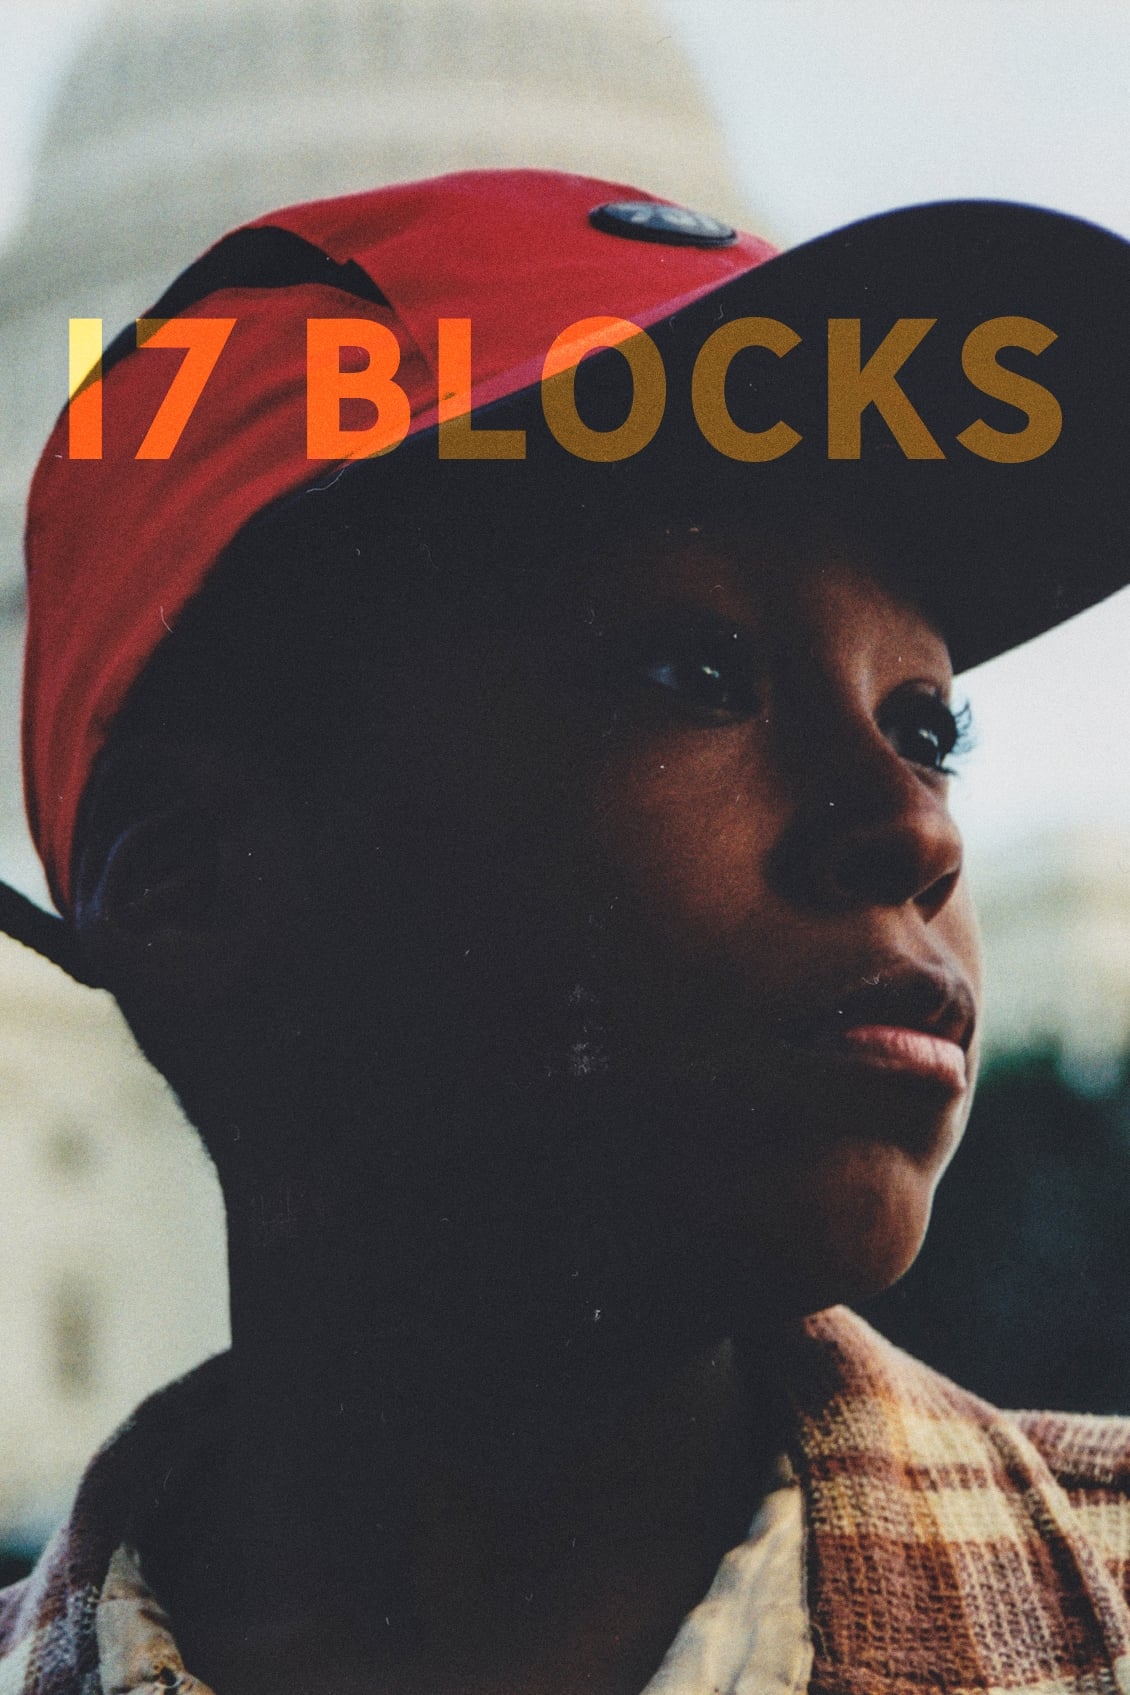 17 Blocks Picture